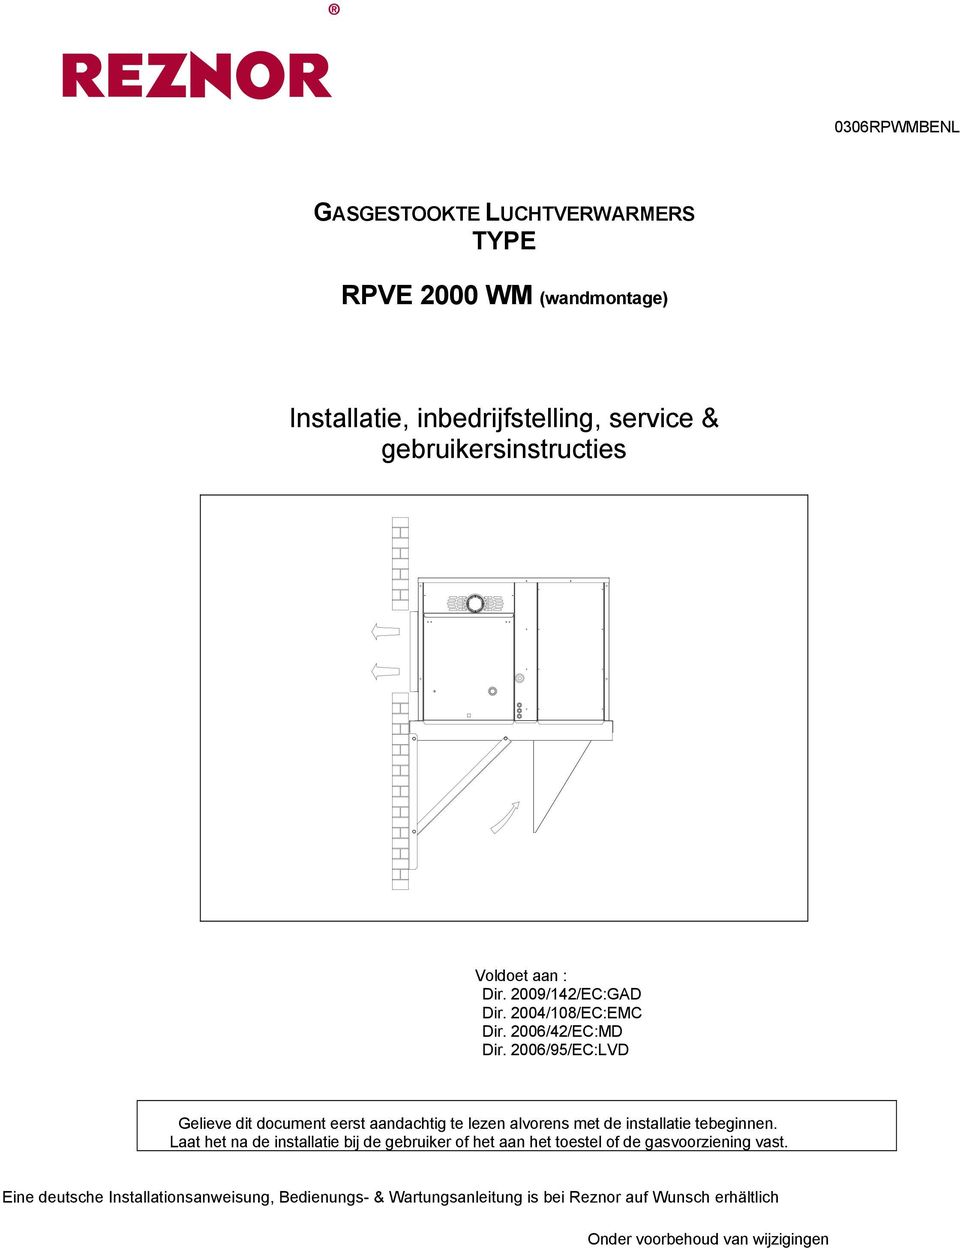 2006/95/EC:LVD Gelieve dit document eerst aandachtig te lezen alvorens met de installatie tebeginnen.